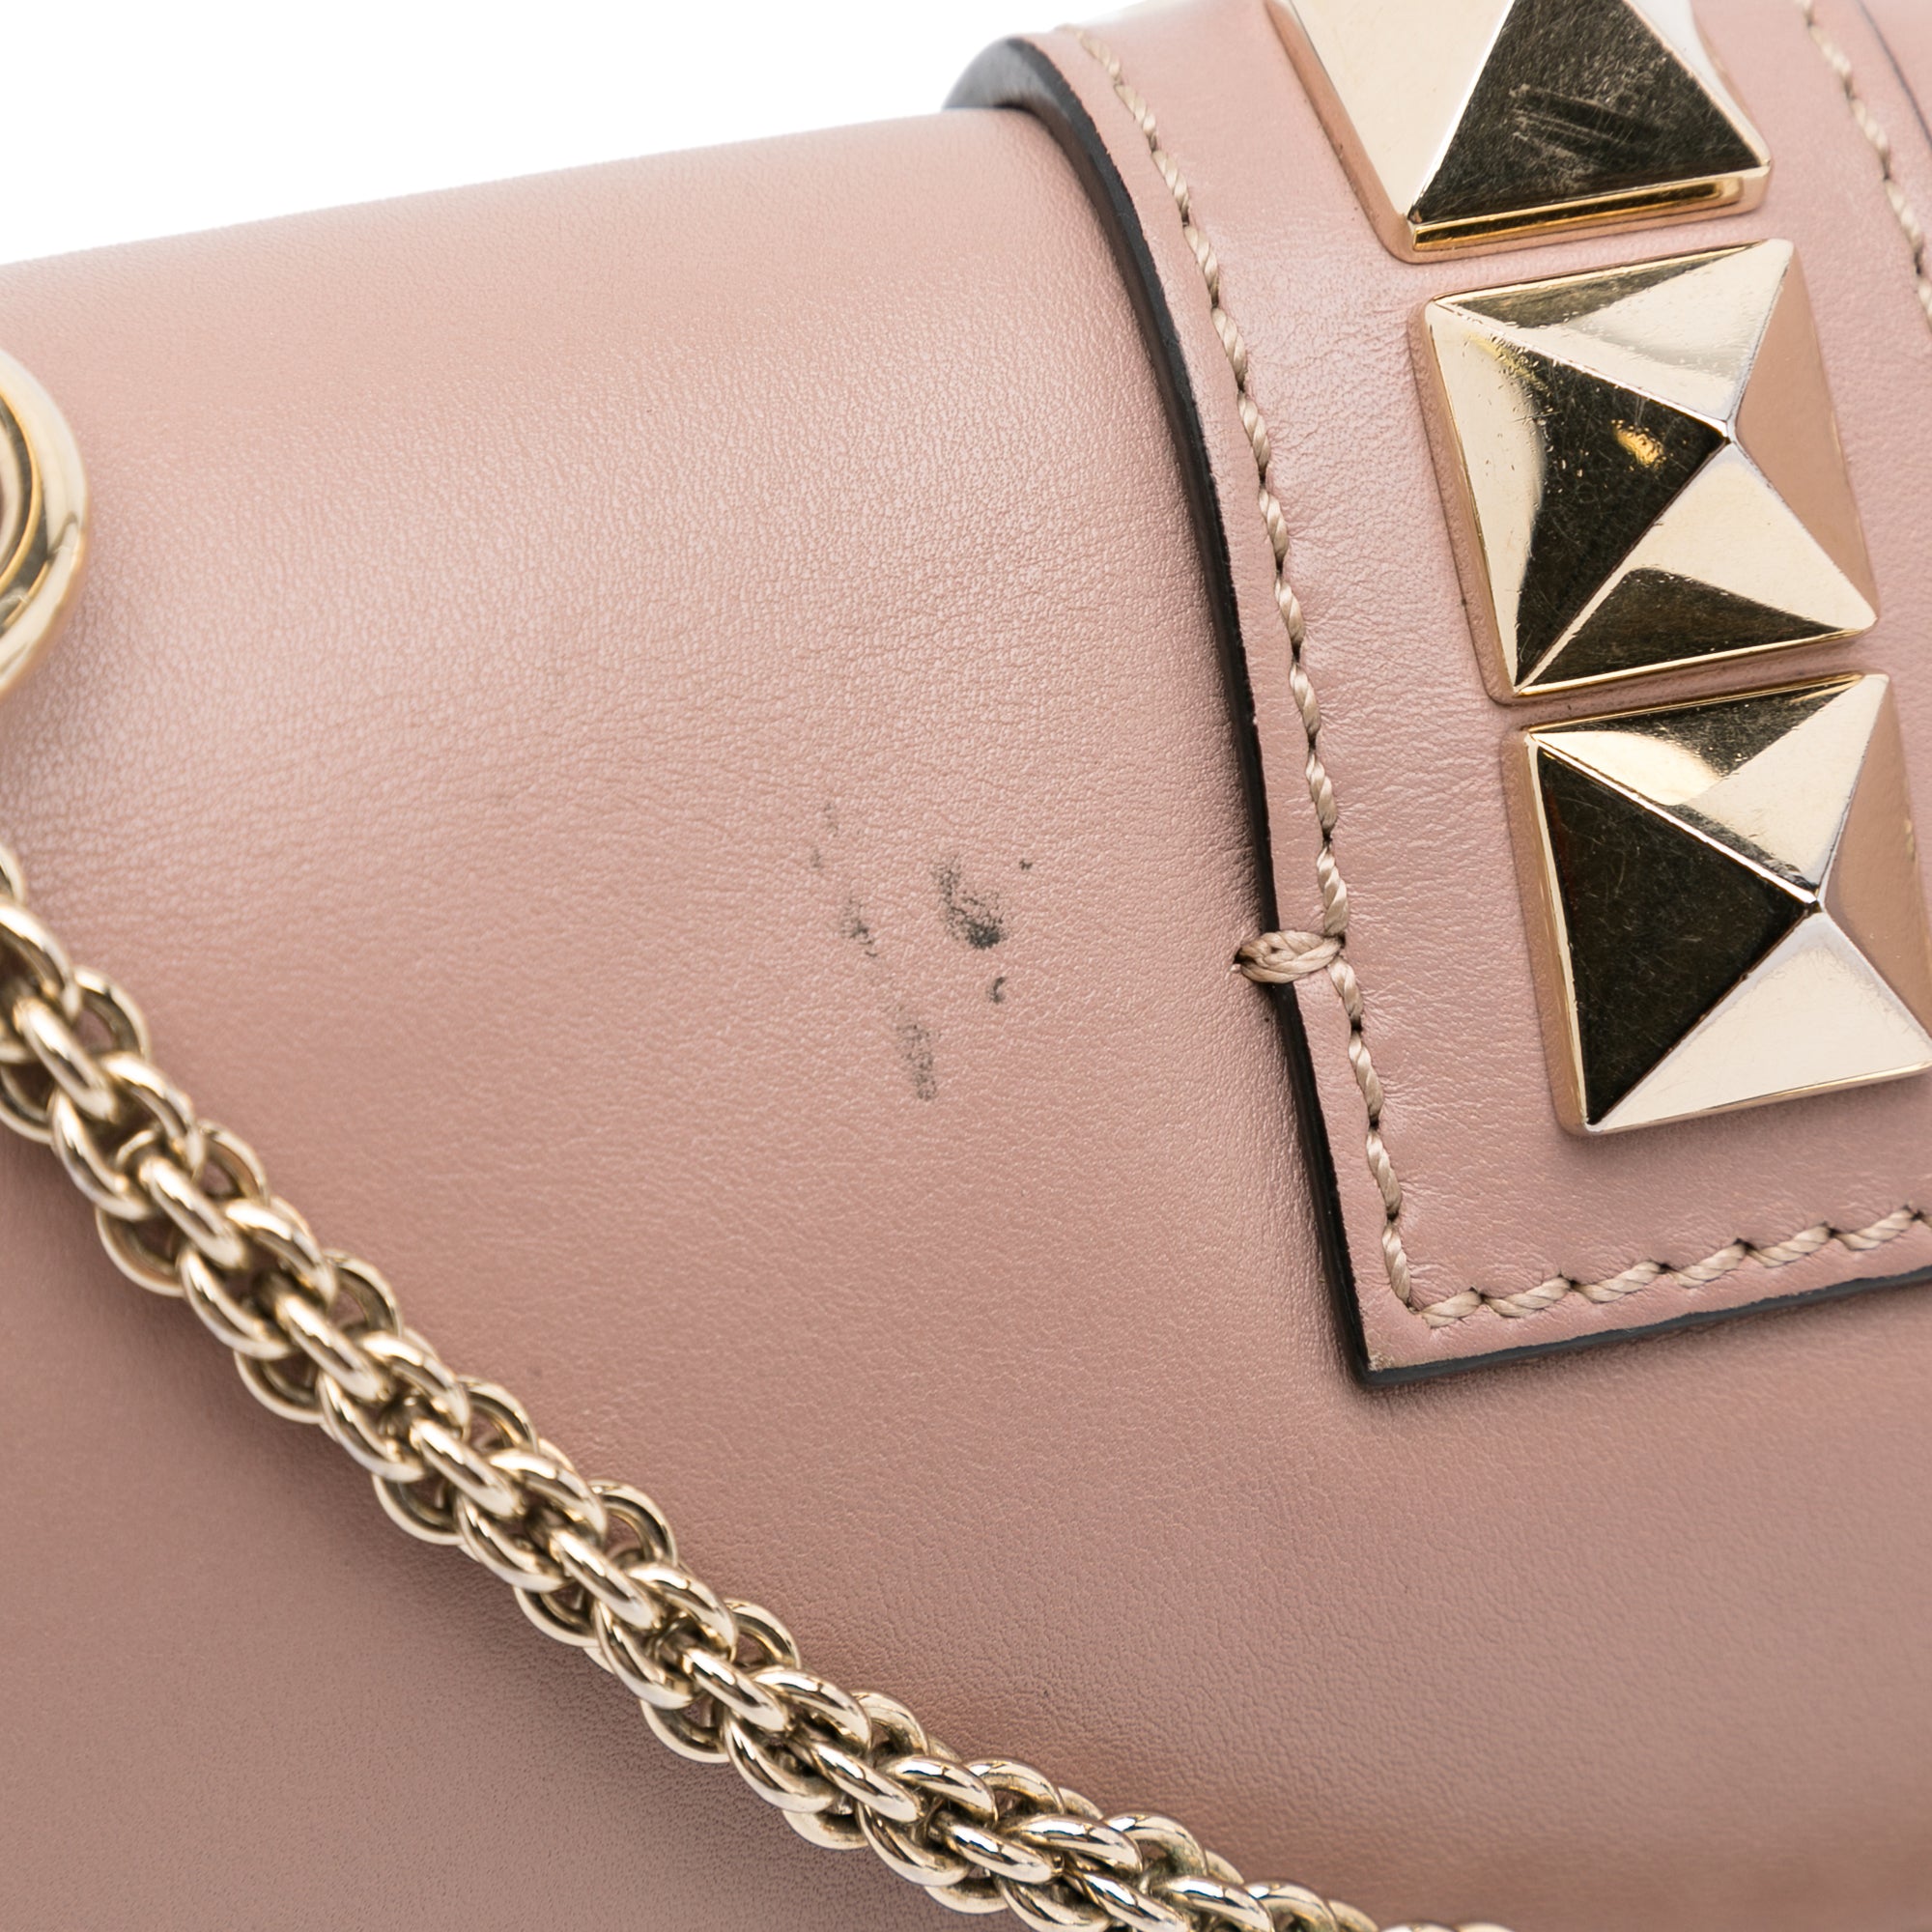 Pink Valentino Rockstud Glam Lock Crossbody Bag – Designer Revival